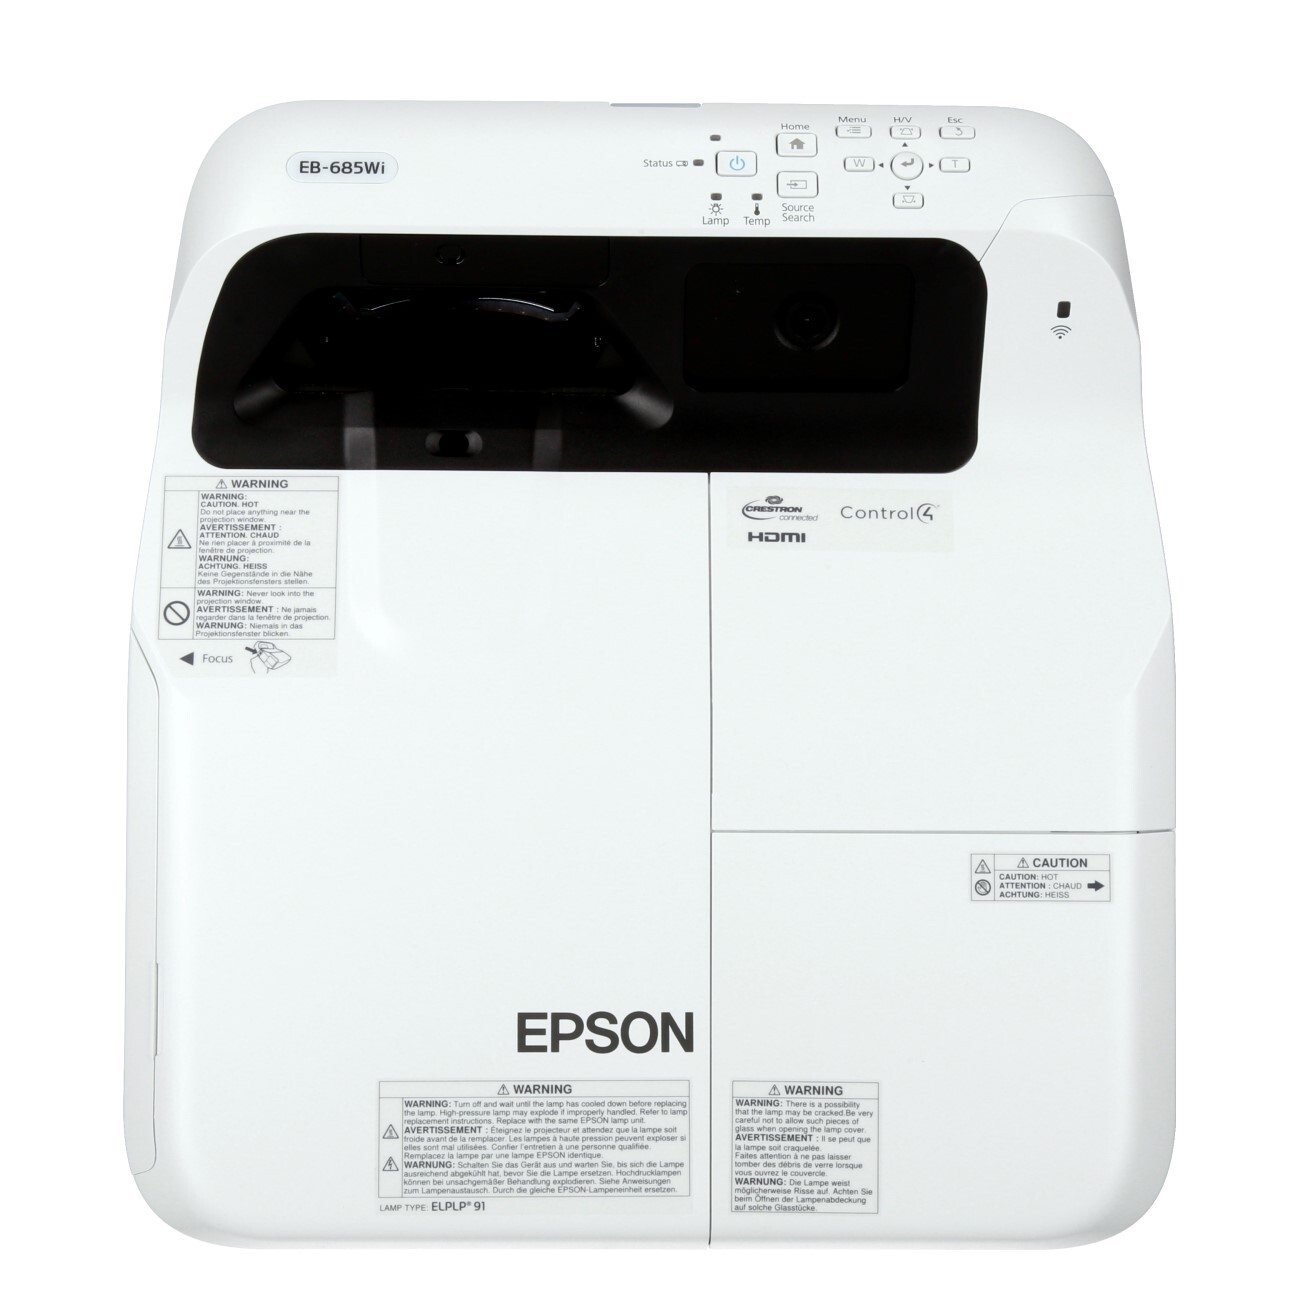 Epson-EB-685WI